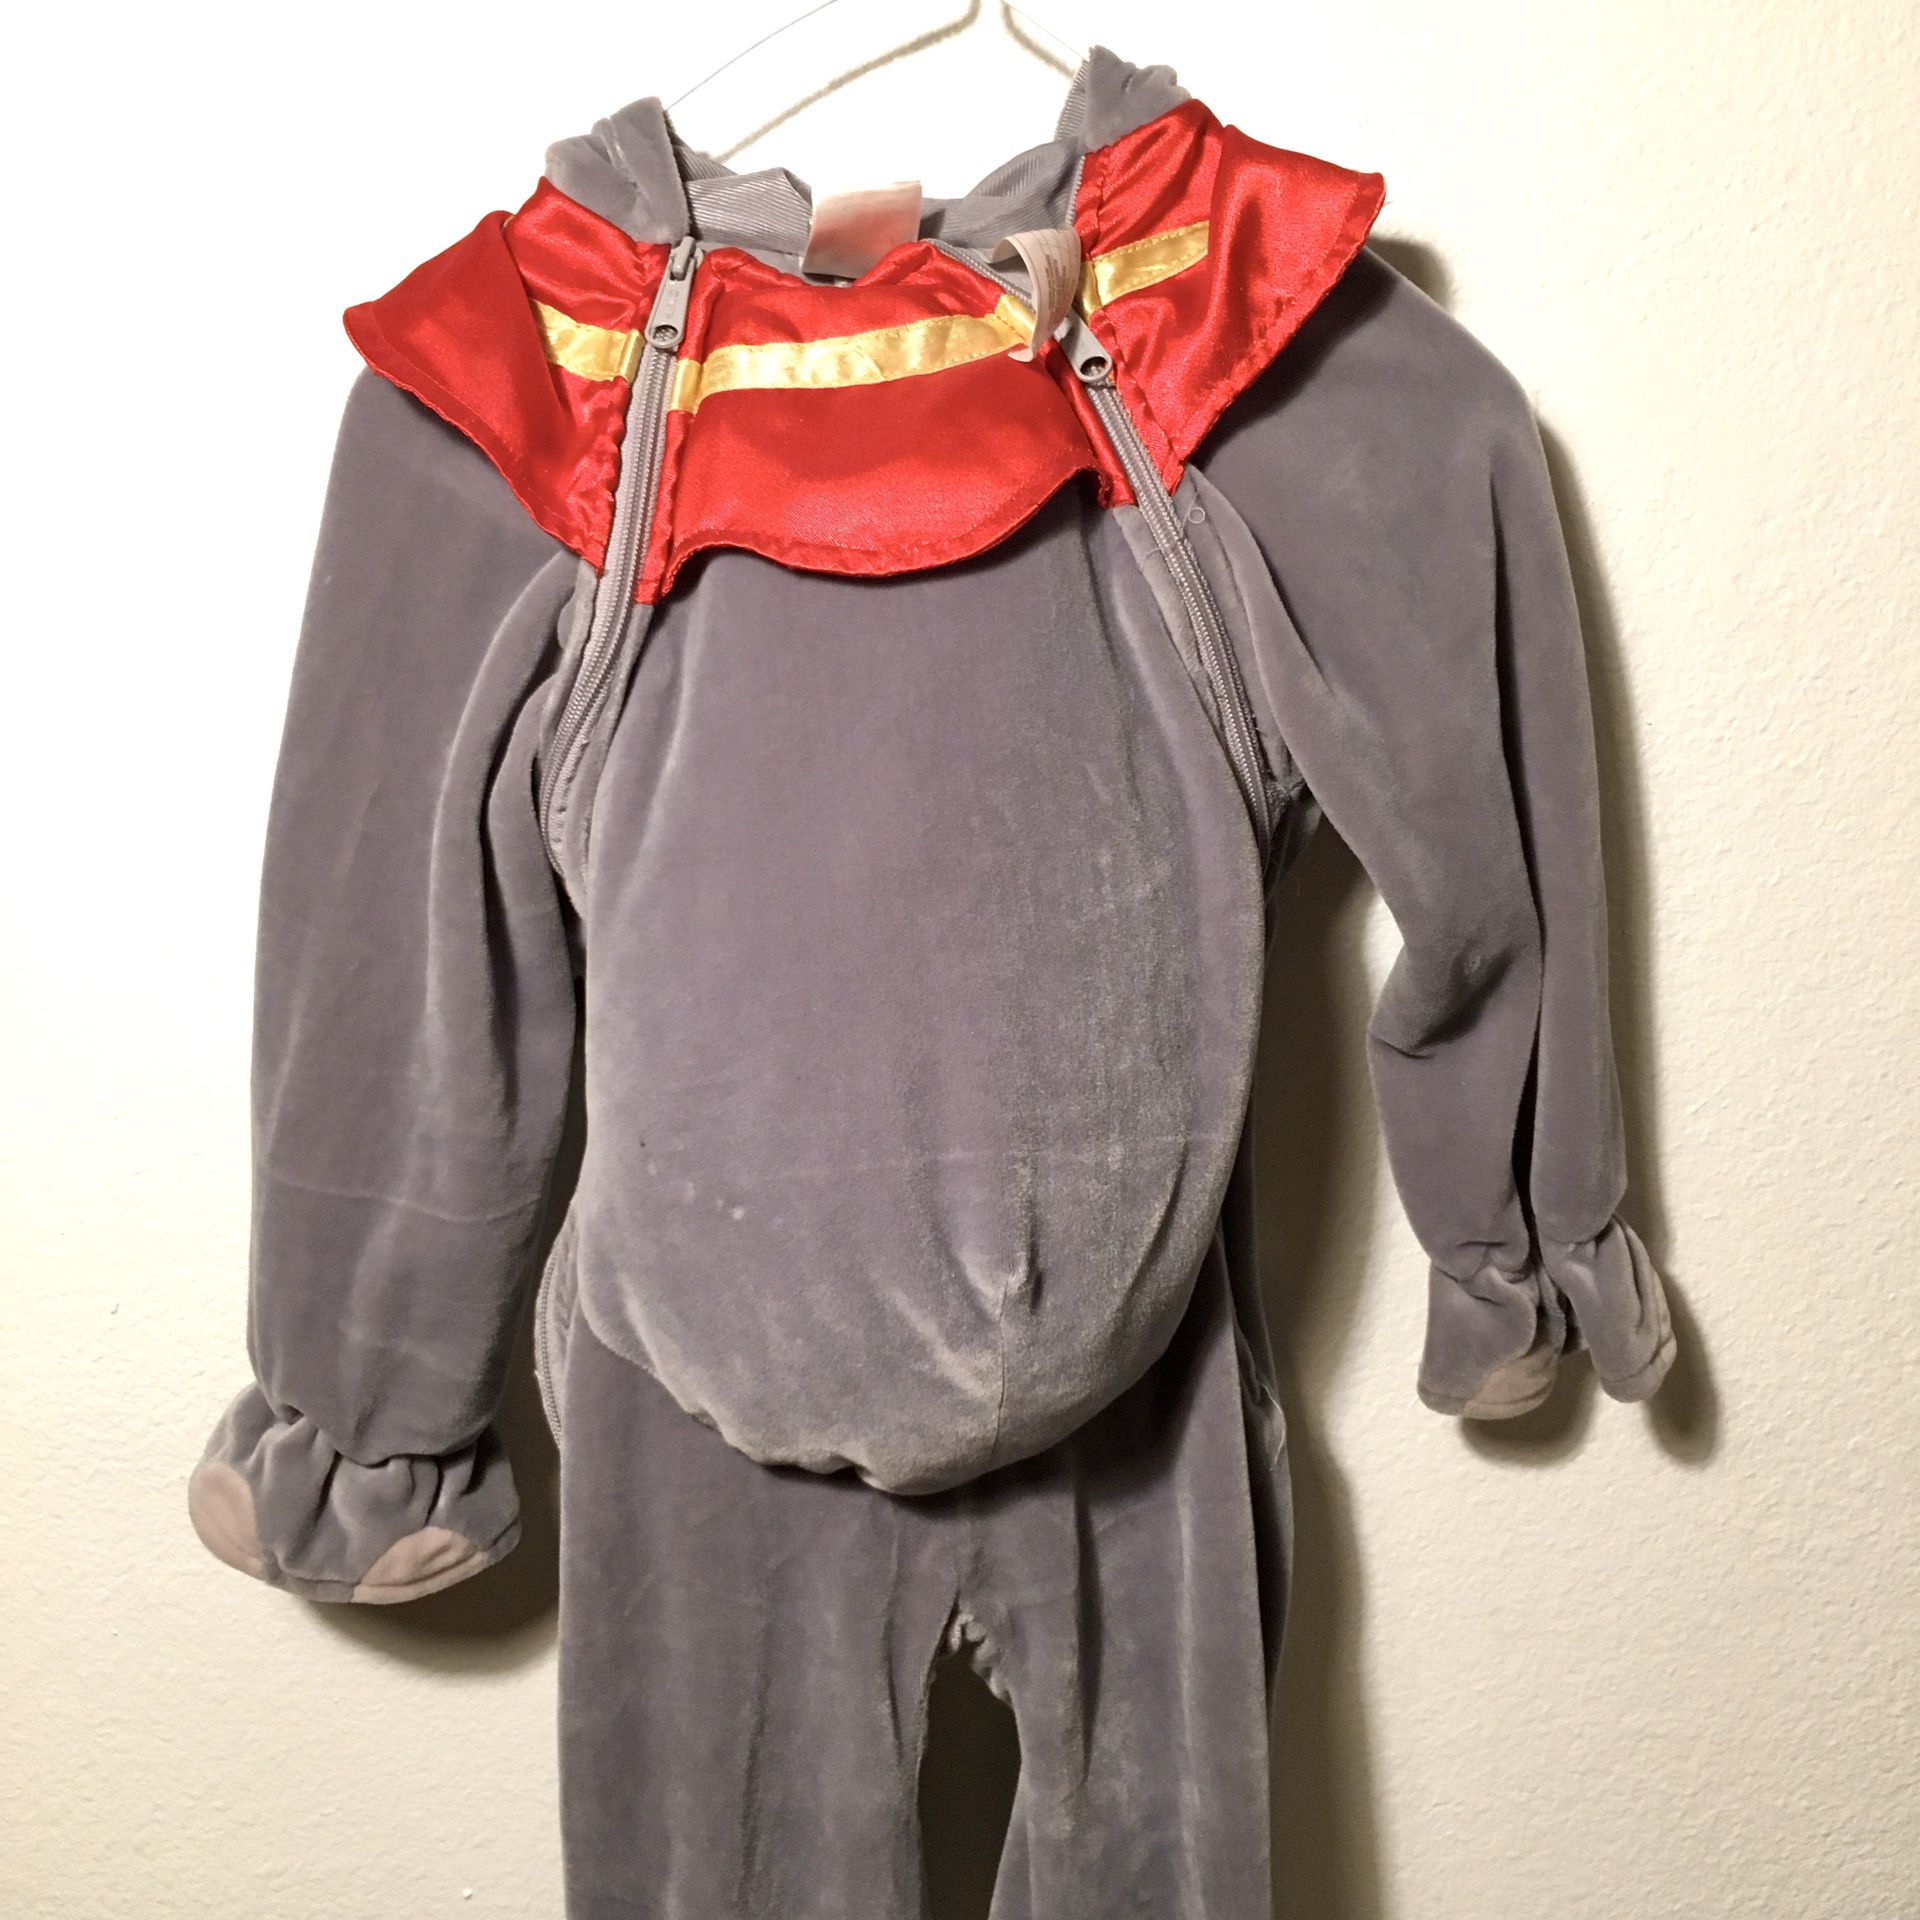 Toddler Dumbo costume